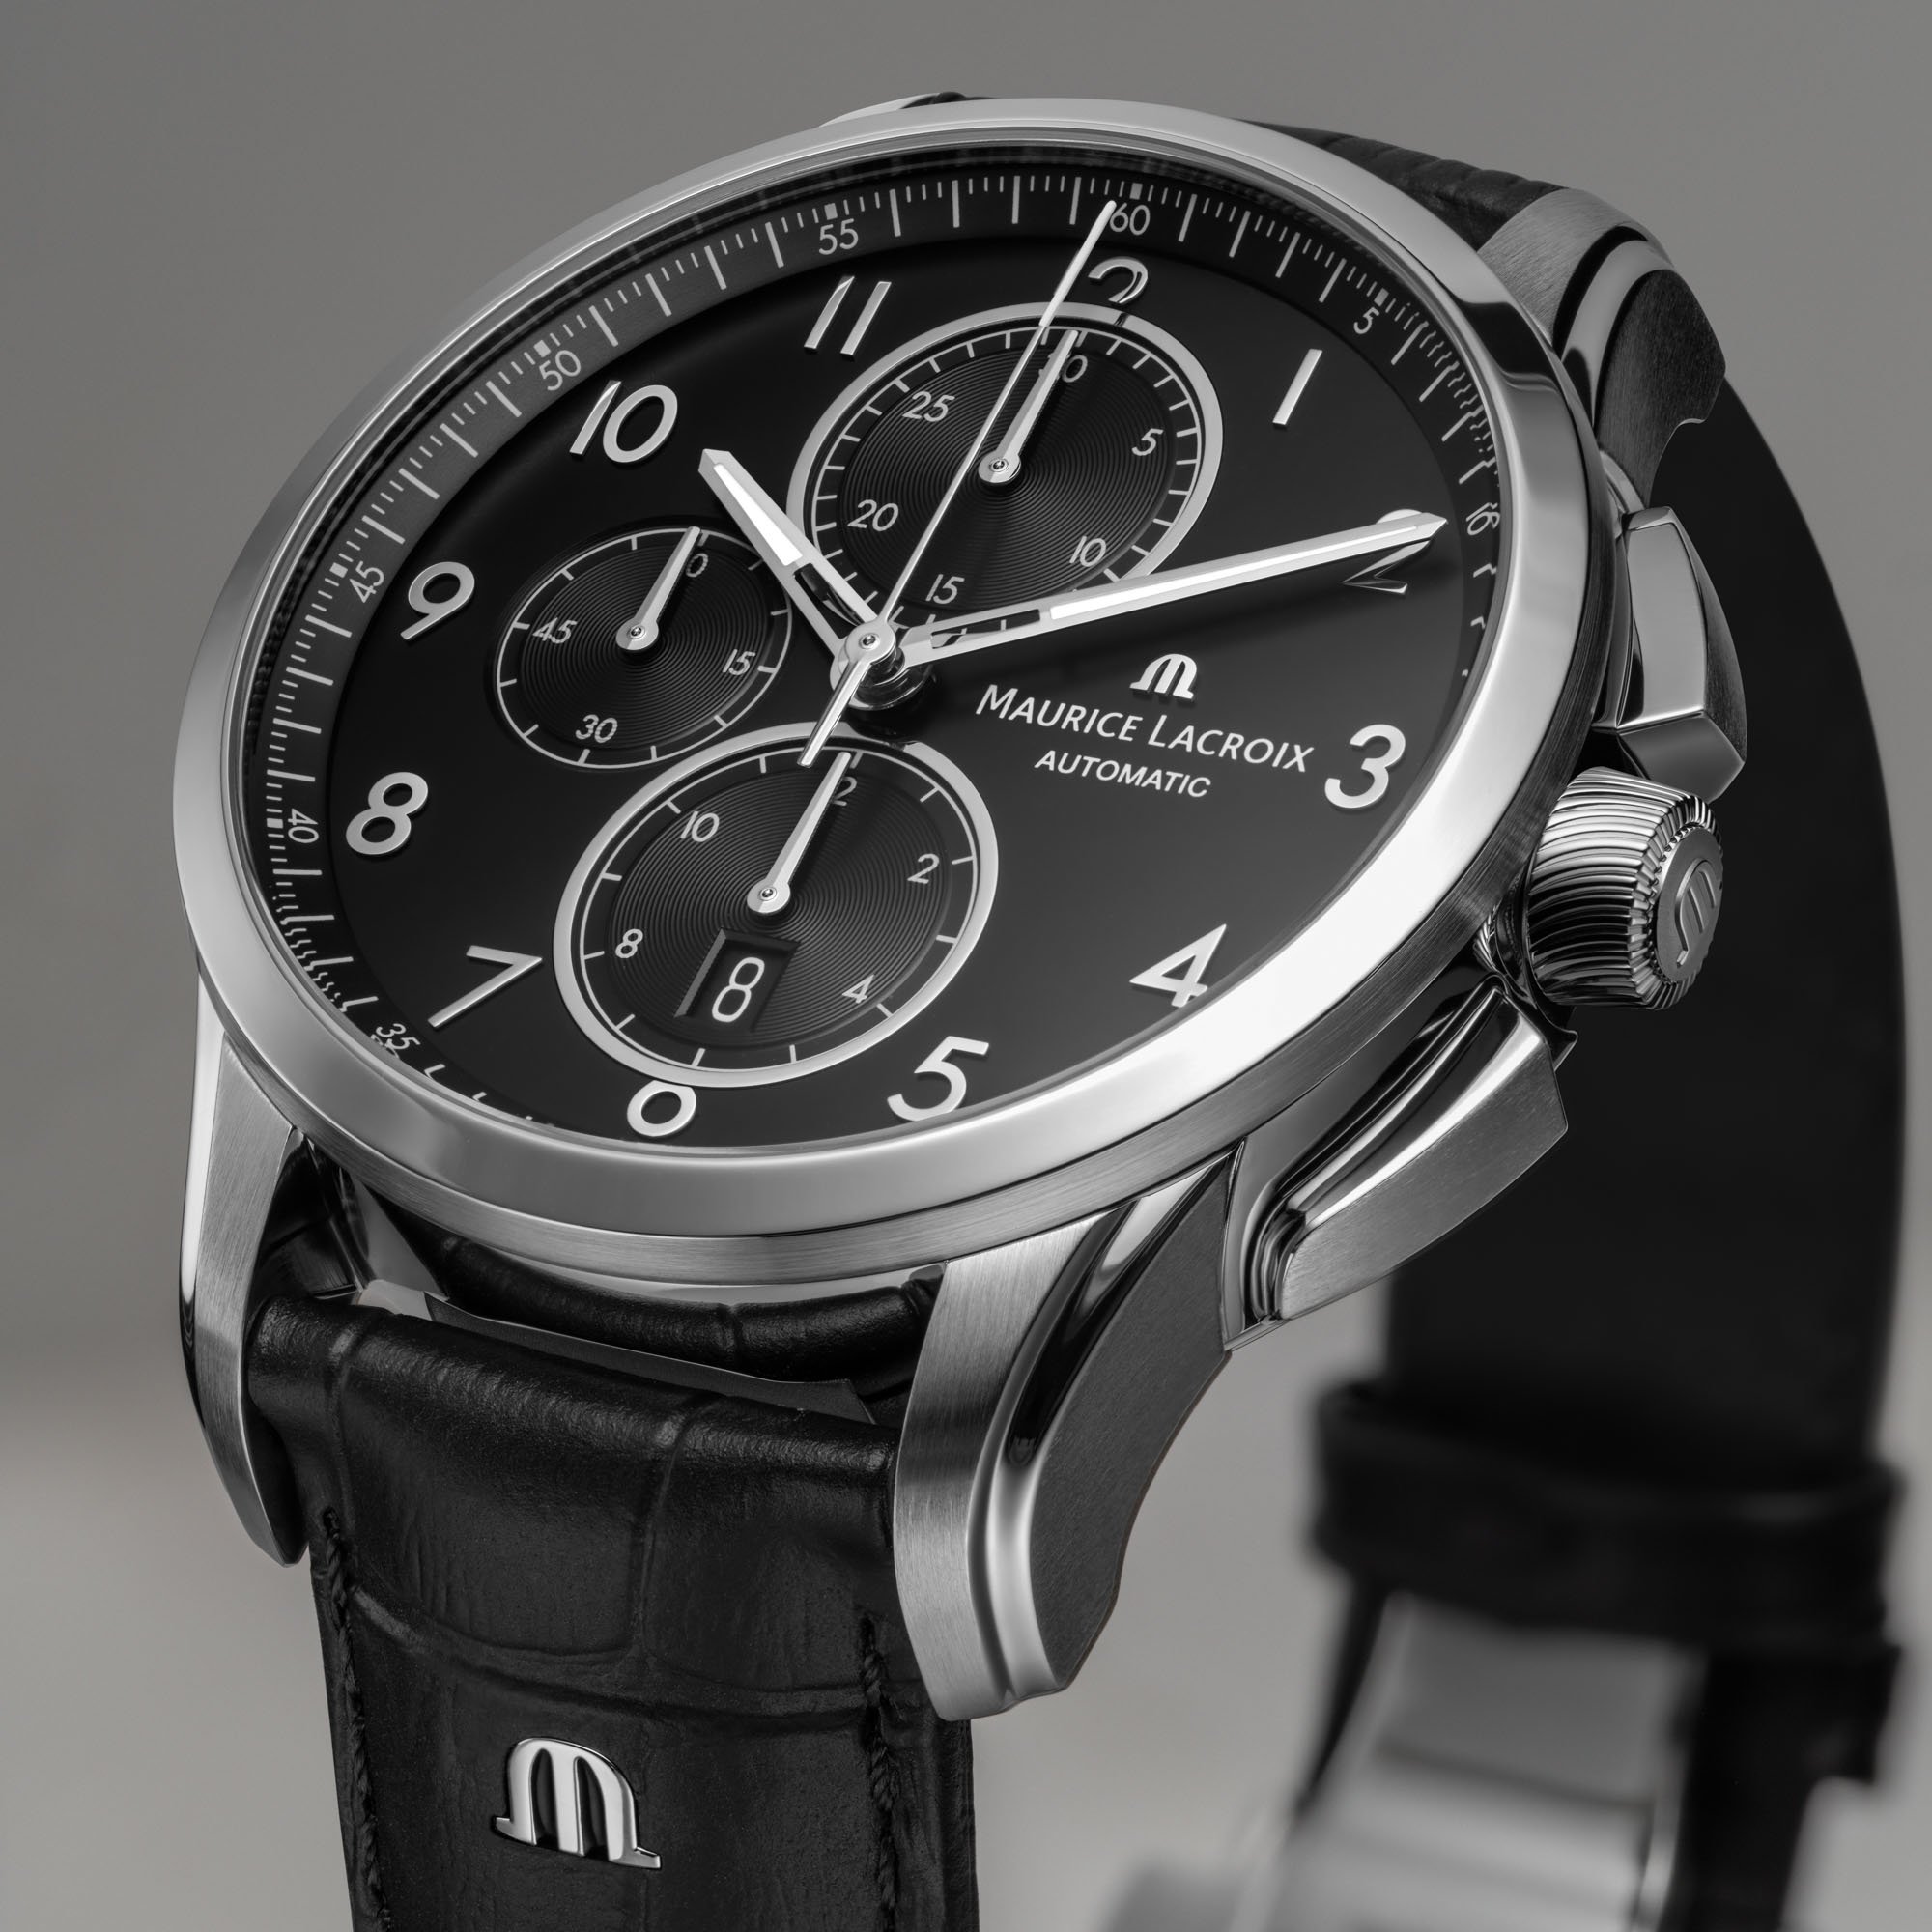 Maurice Lacroix представляет 43-миллиметровые часы Pontos Chronograph